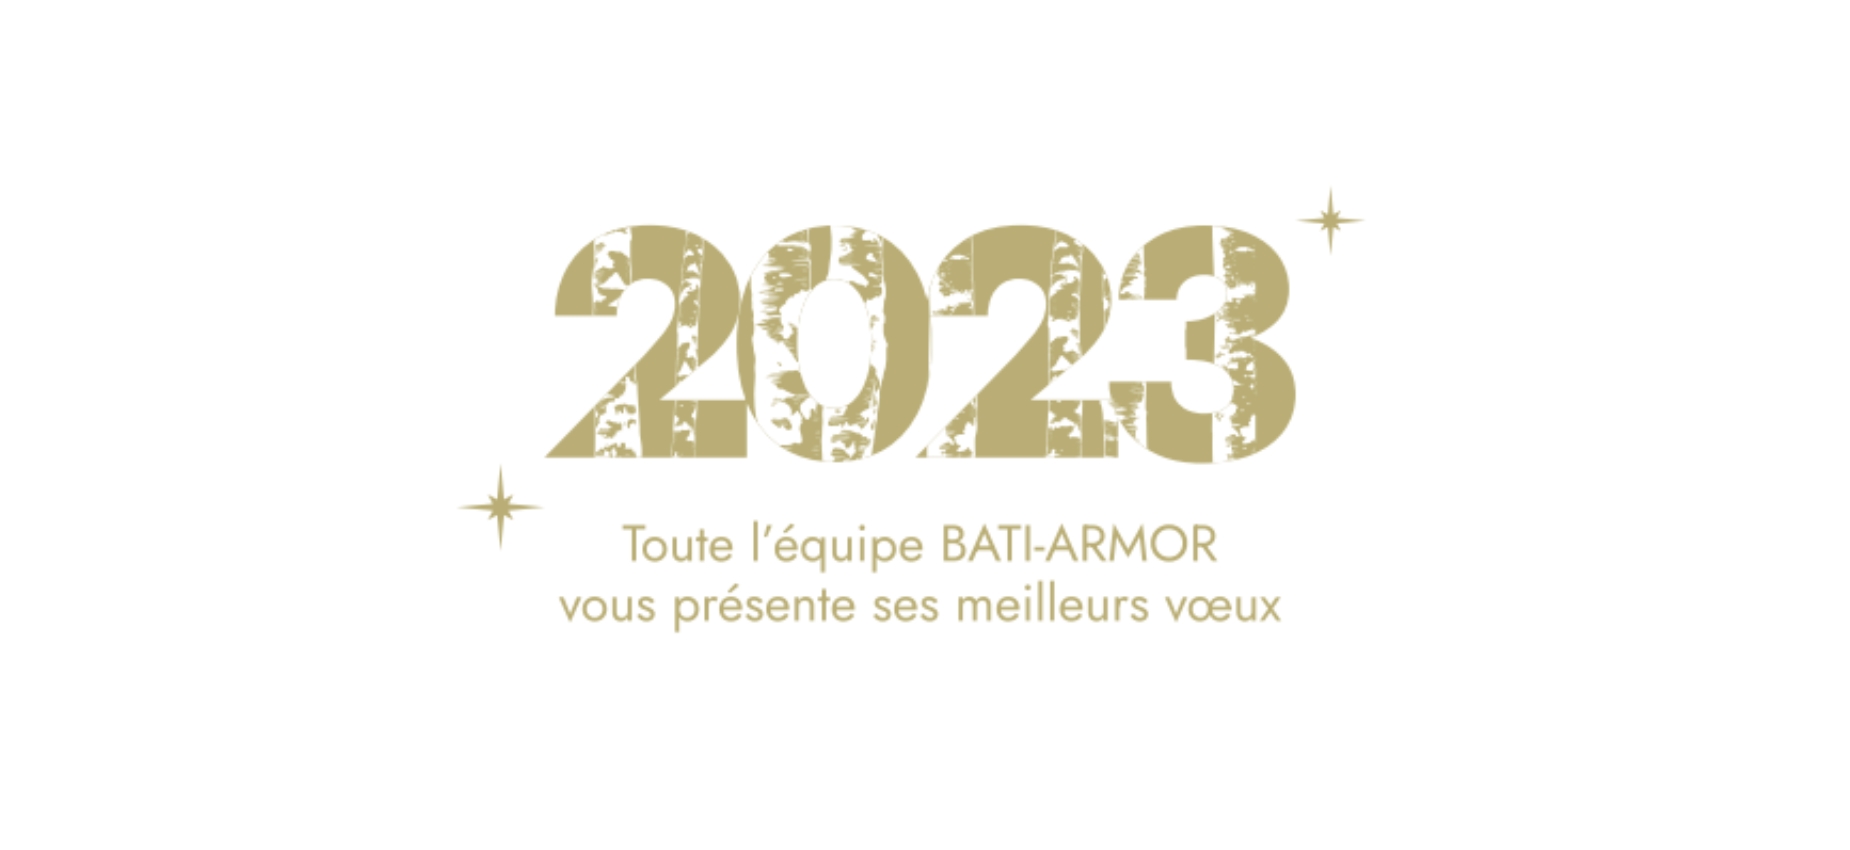 Actualité BATI-ARMOR vous souhaite une excellente année 2023 !